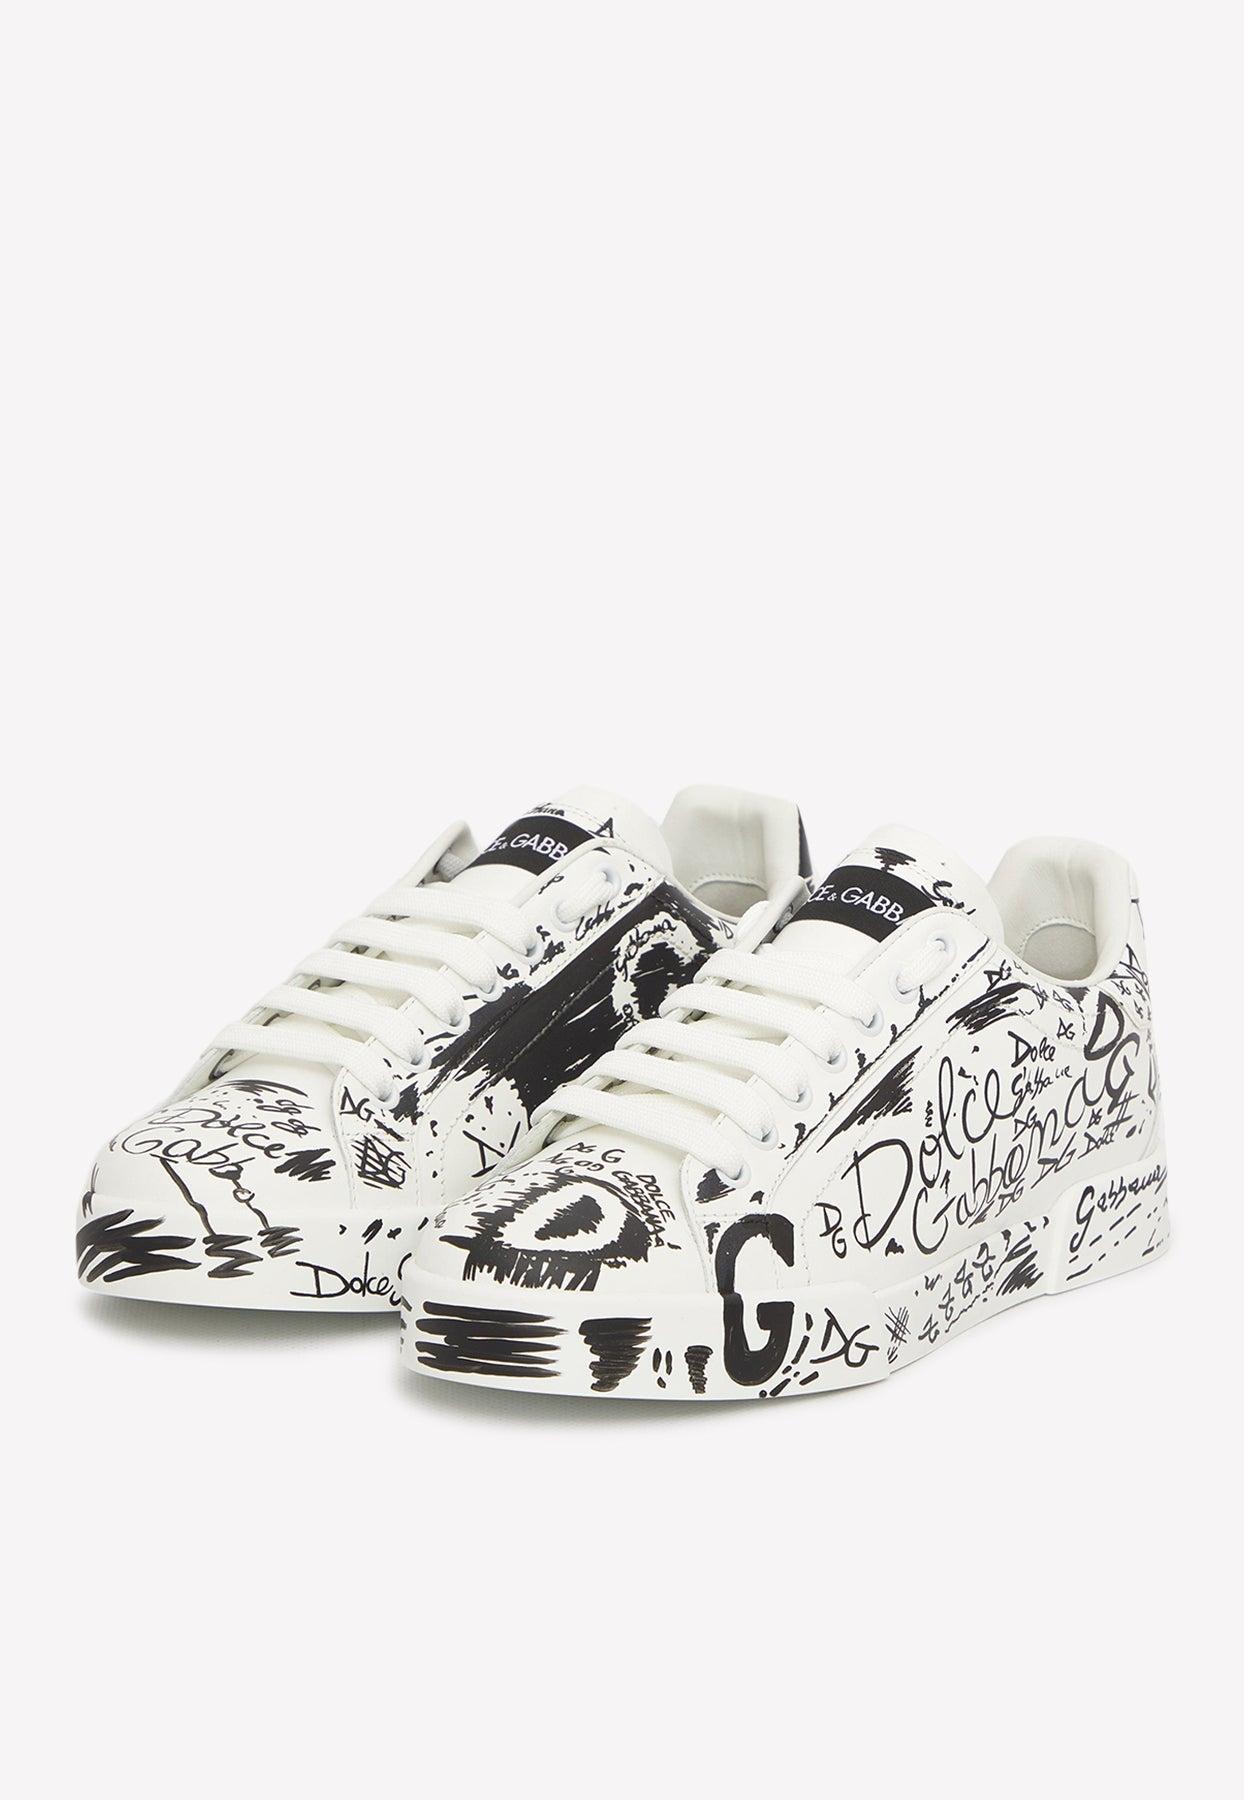 Dolce & Gabbana Portofino Graffiti Print Leather Sneakers in White | Lyst